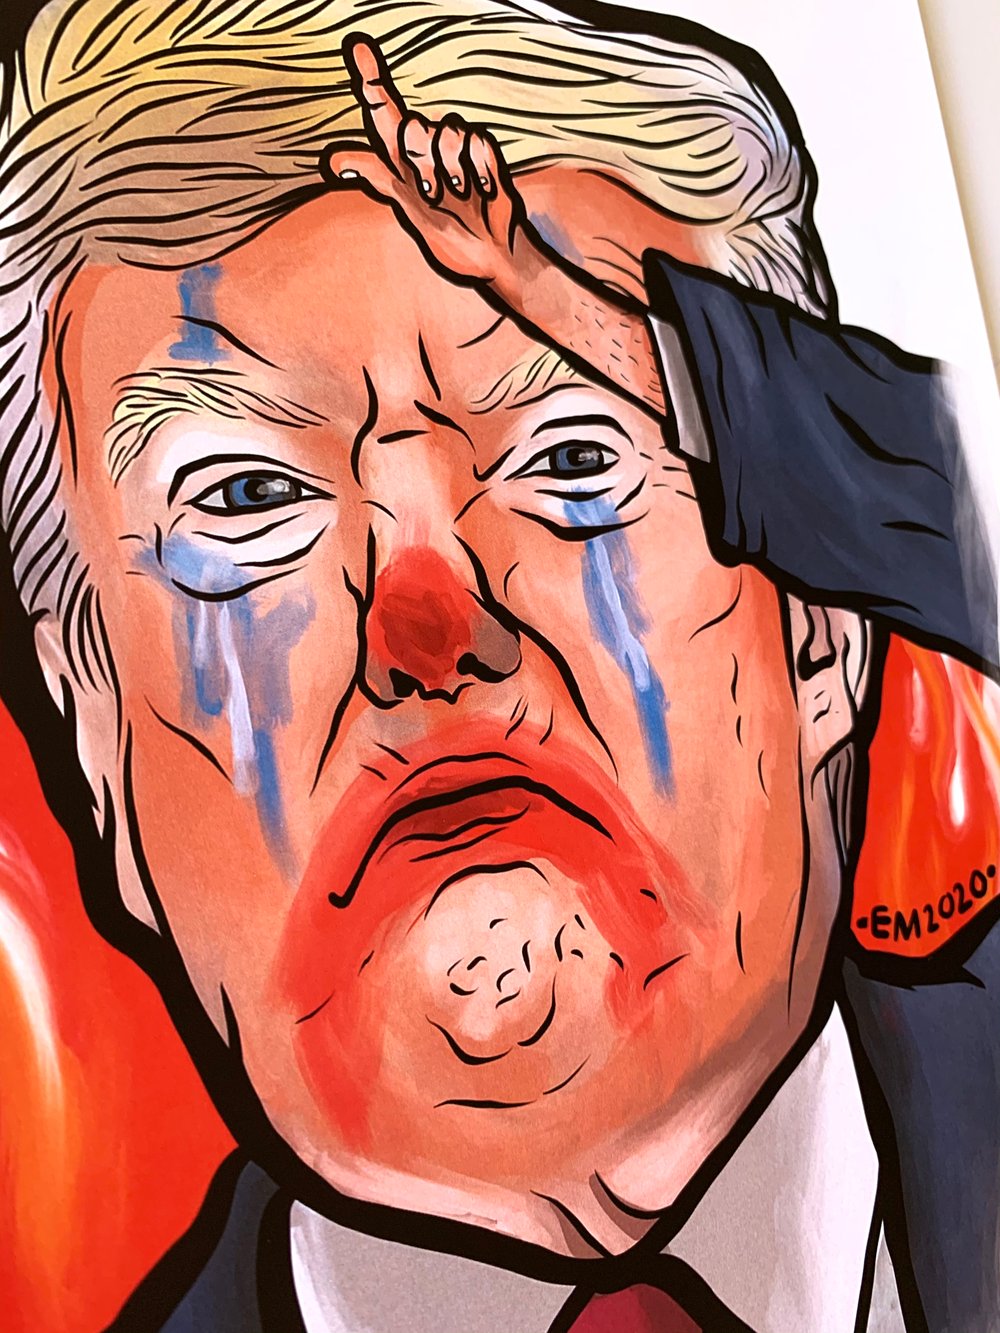 Donald “L” Trump Emetic Art Print